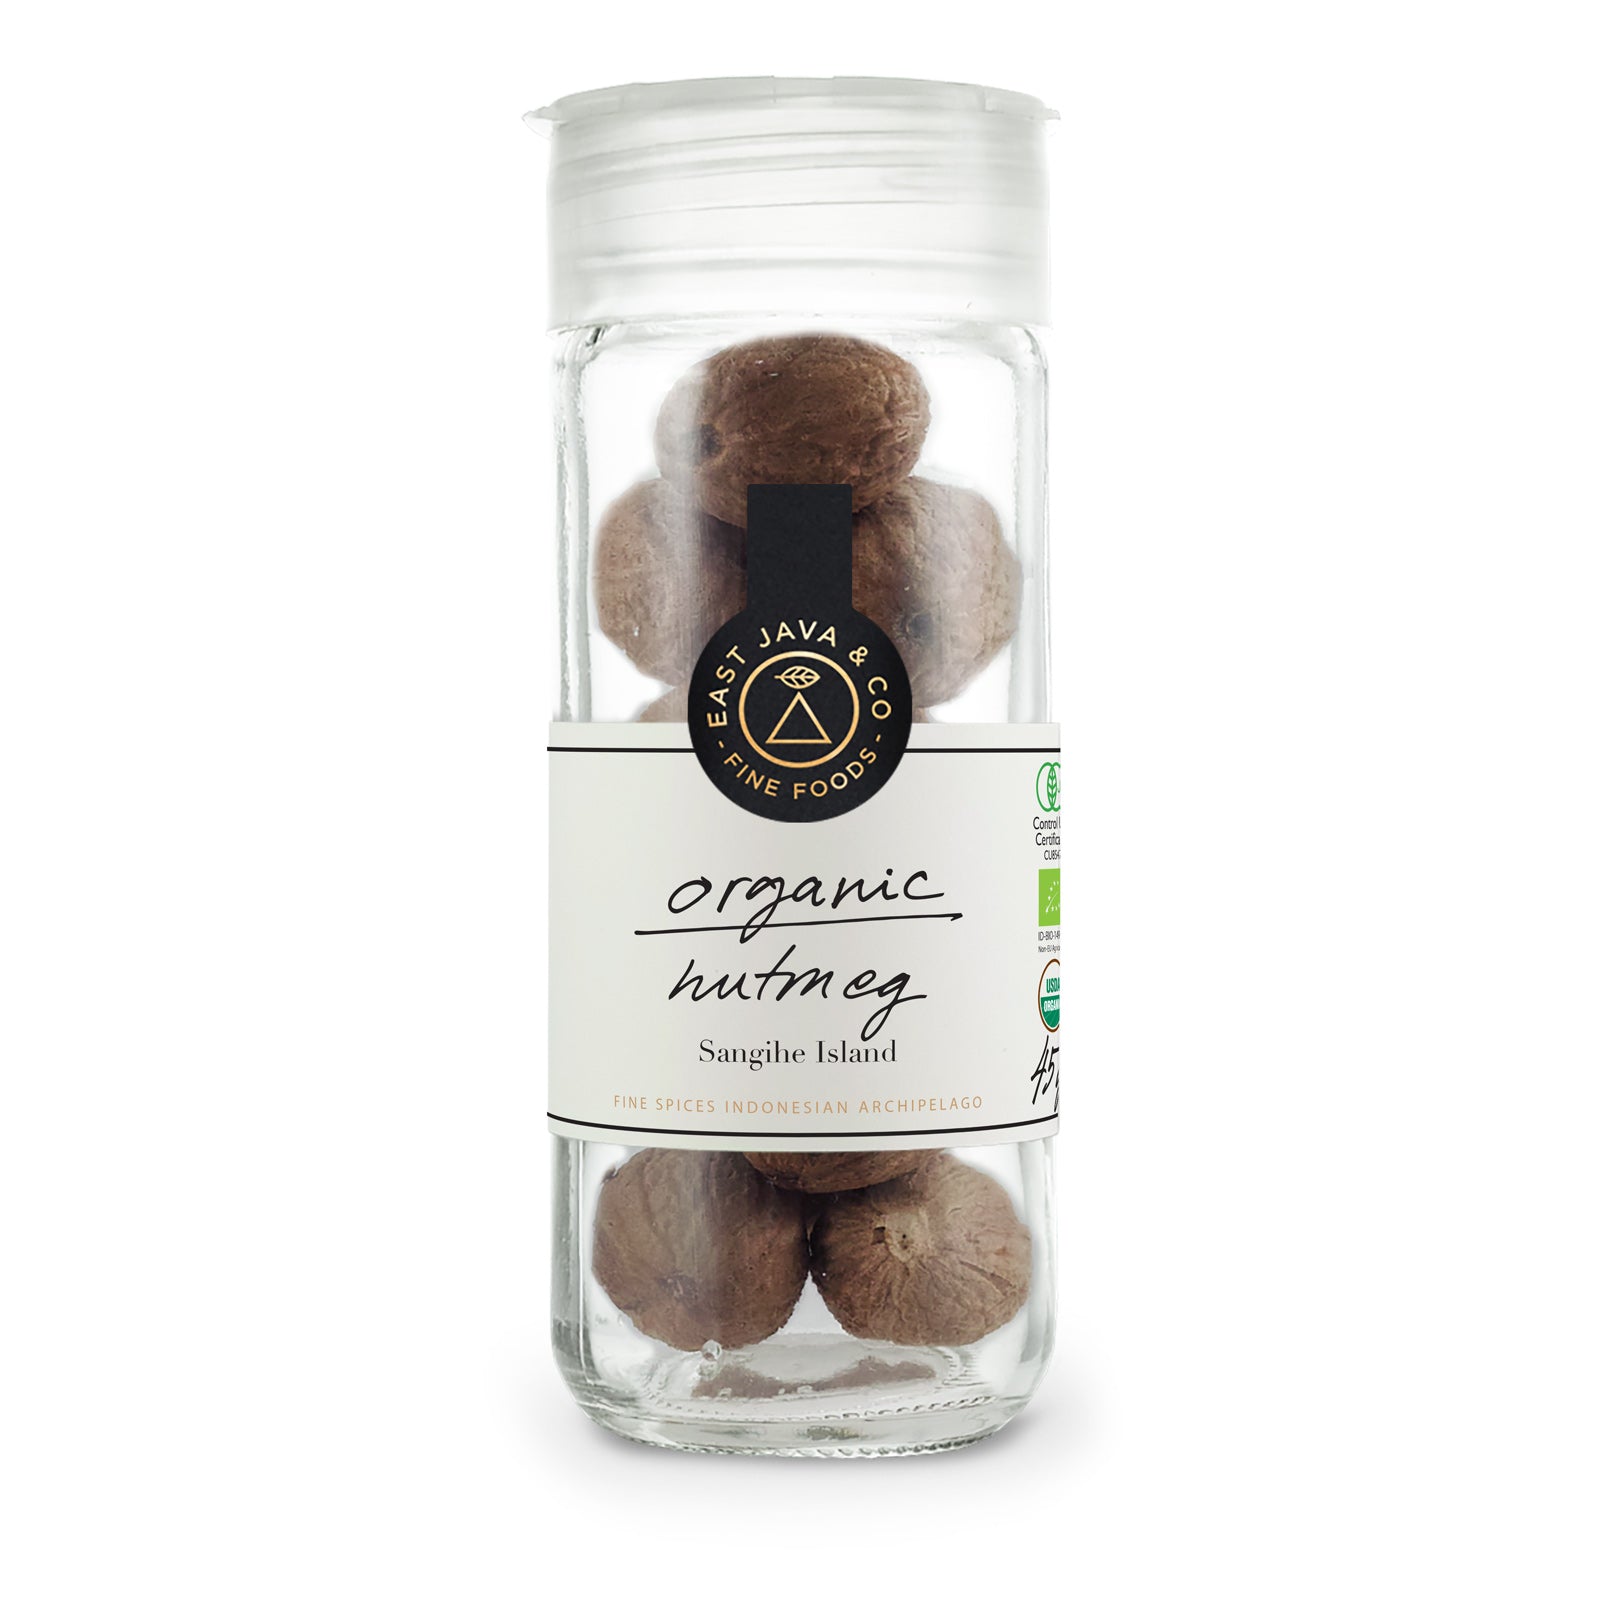 Organic Whole Nutmeg - 45g